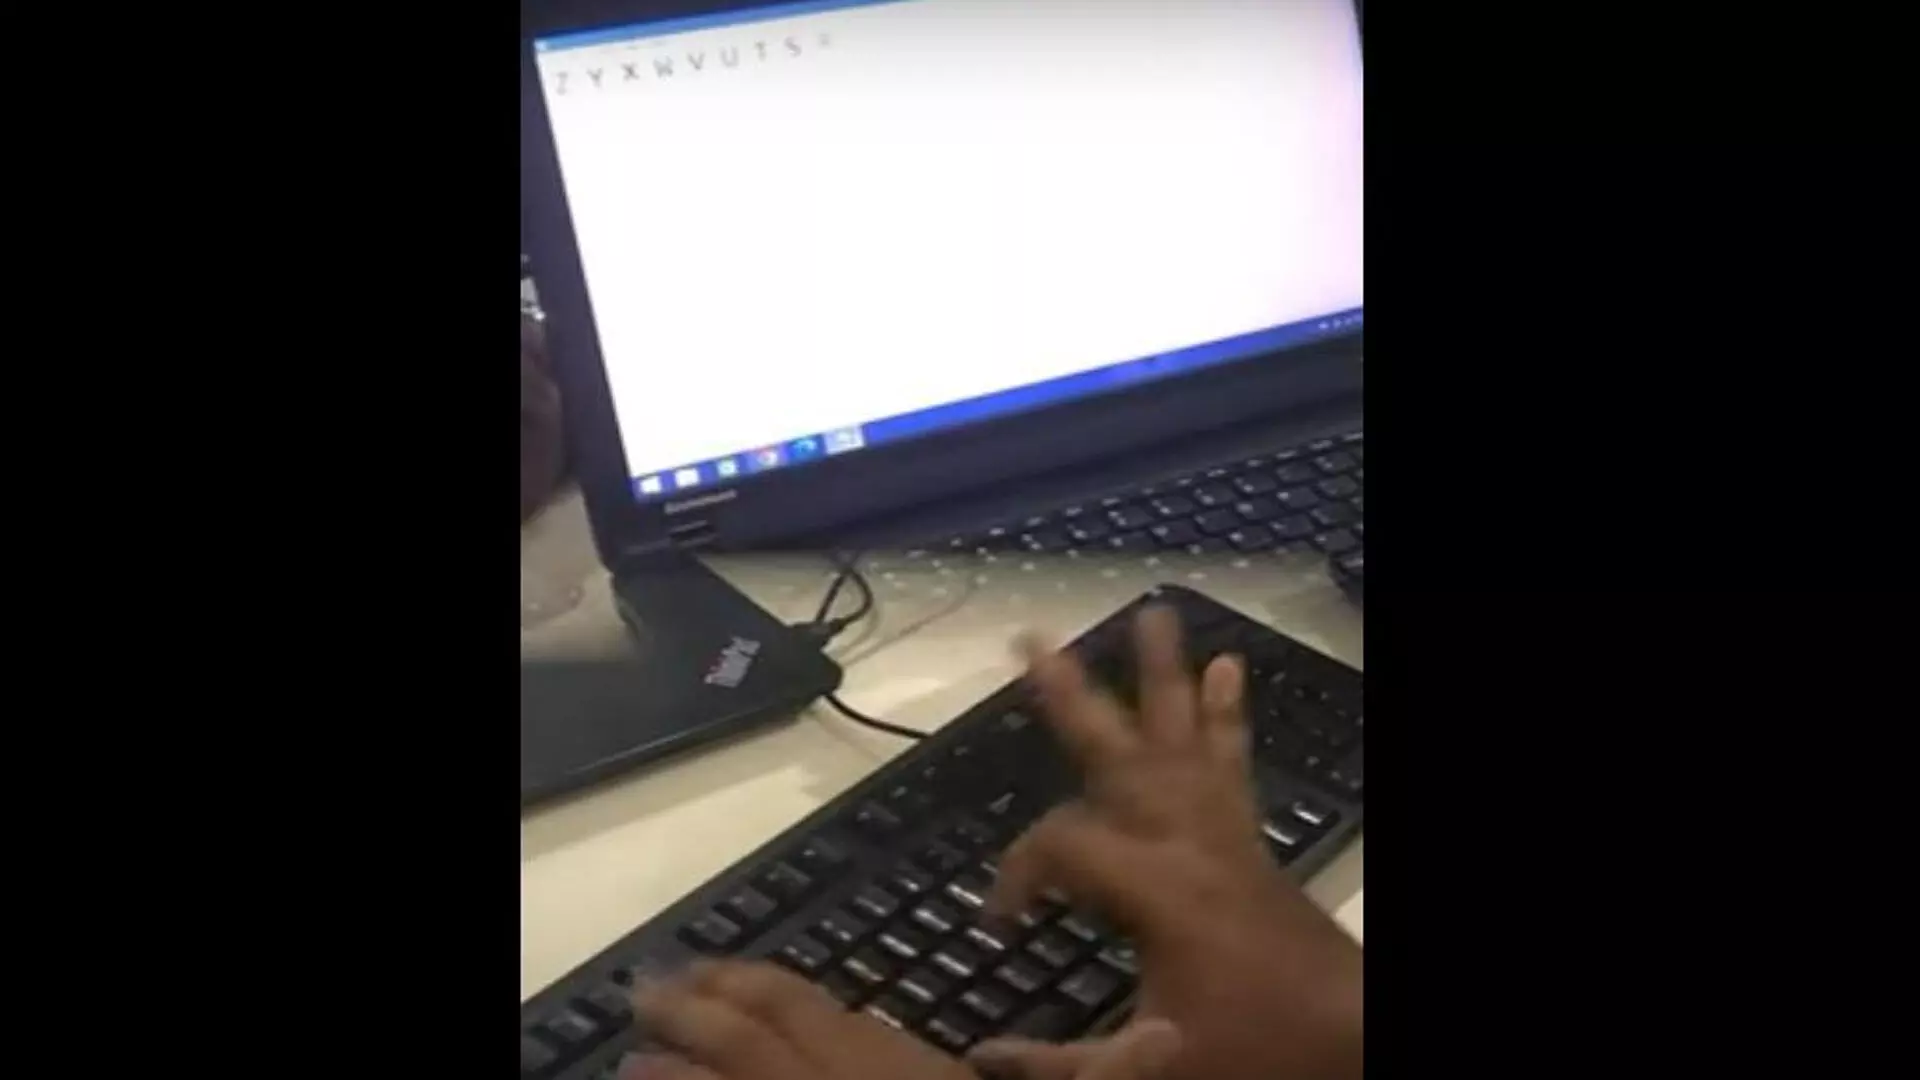 भारतीय शख्स ने कंप्यूटर टाइपिंग में बनाया गिनीज वर्ल्ड रिकॉर्ड, देखें वीडियो...